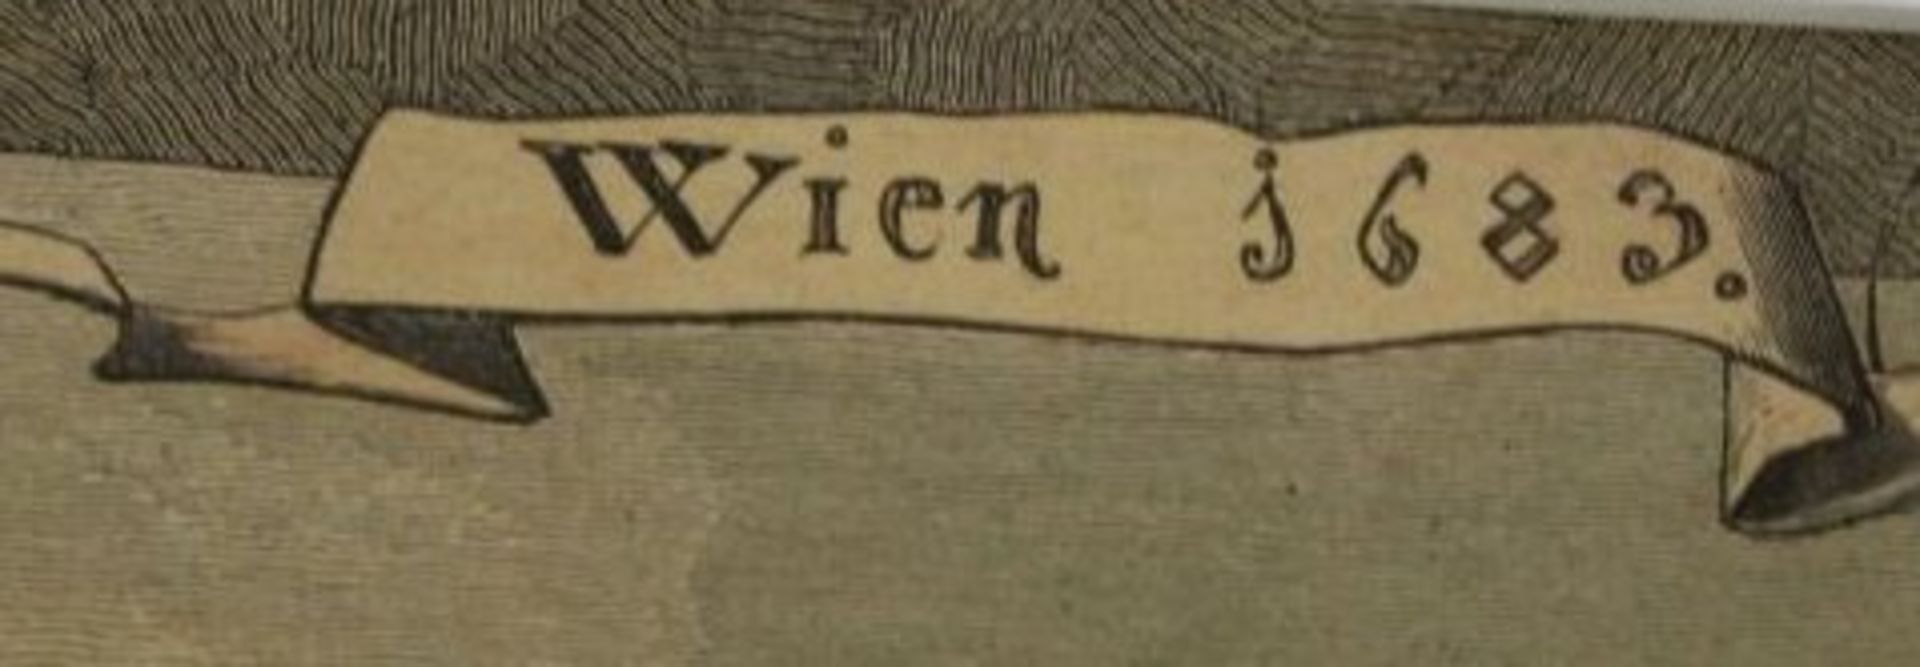 Ansichtengrafik, Wien 1683, gerahmt/Glas, RG 32 x 36cm. - Bild 2 aus 4